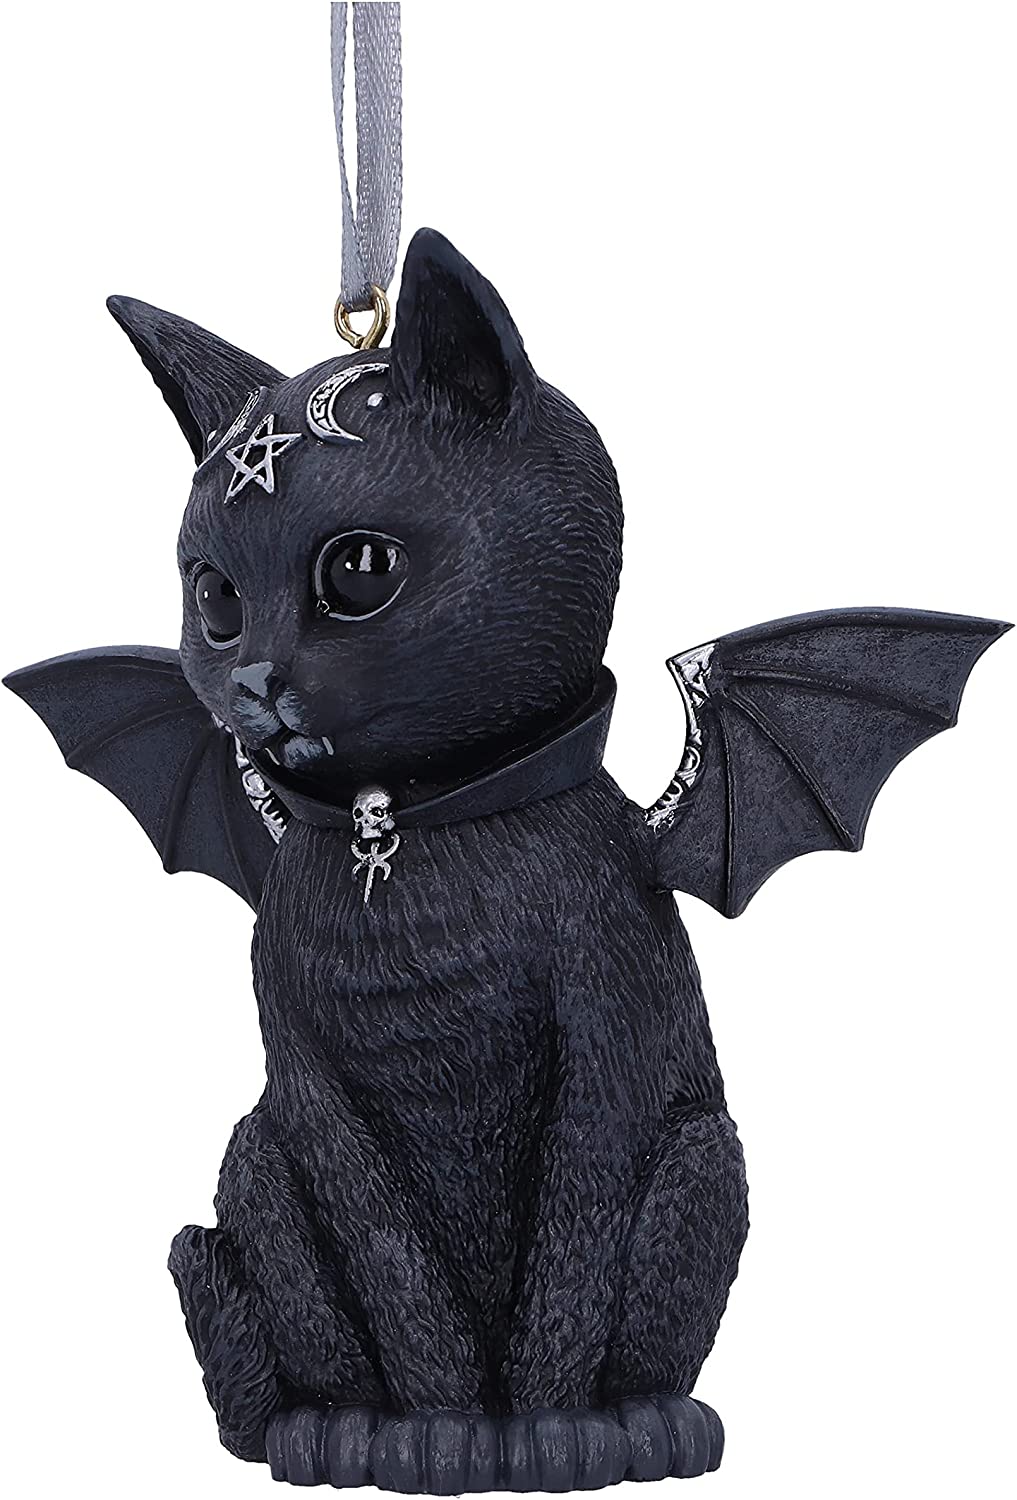 Nemesis Now Malpuss Black Bat Cat Hanging Decorative Ornament 9.2cm